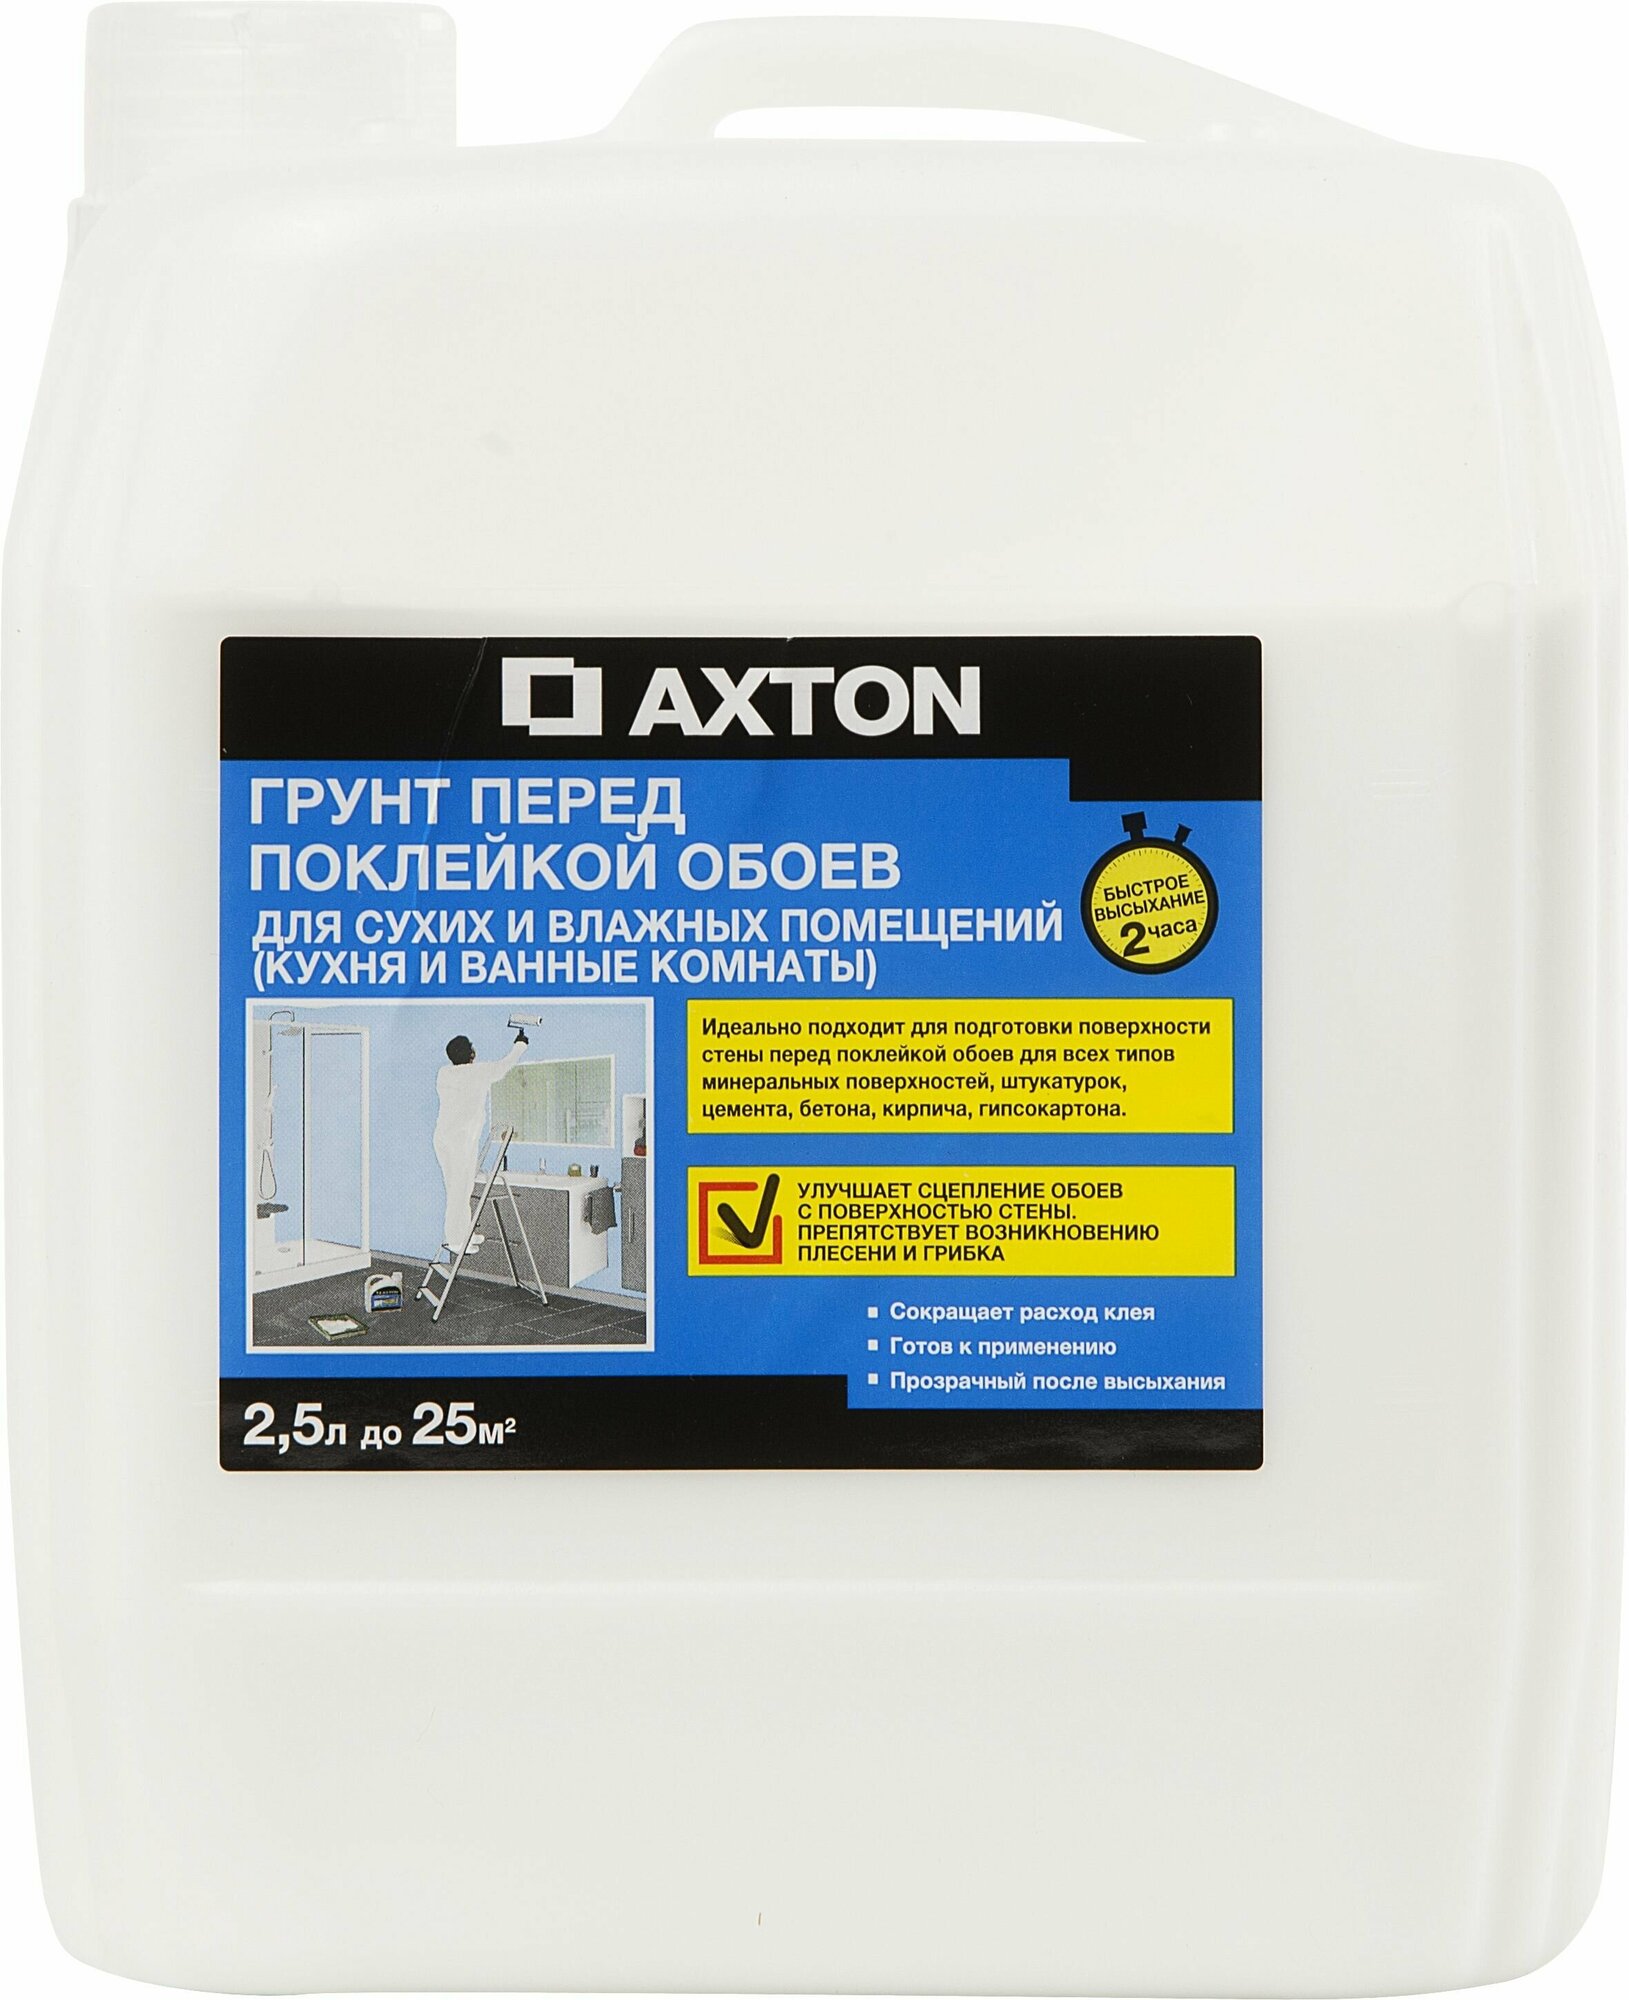 Грунт (грунтовка) Axton для сухих и влажных помещений 2.5 л